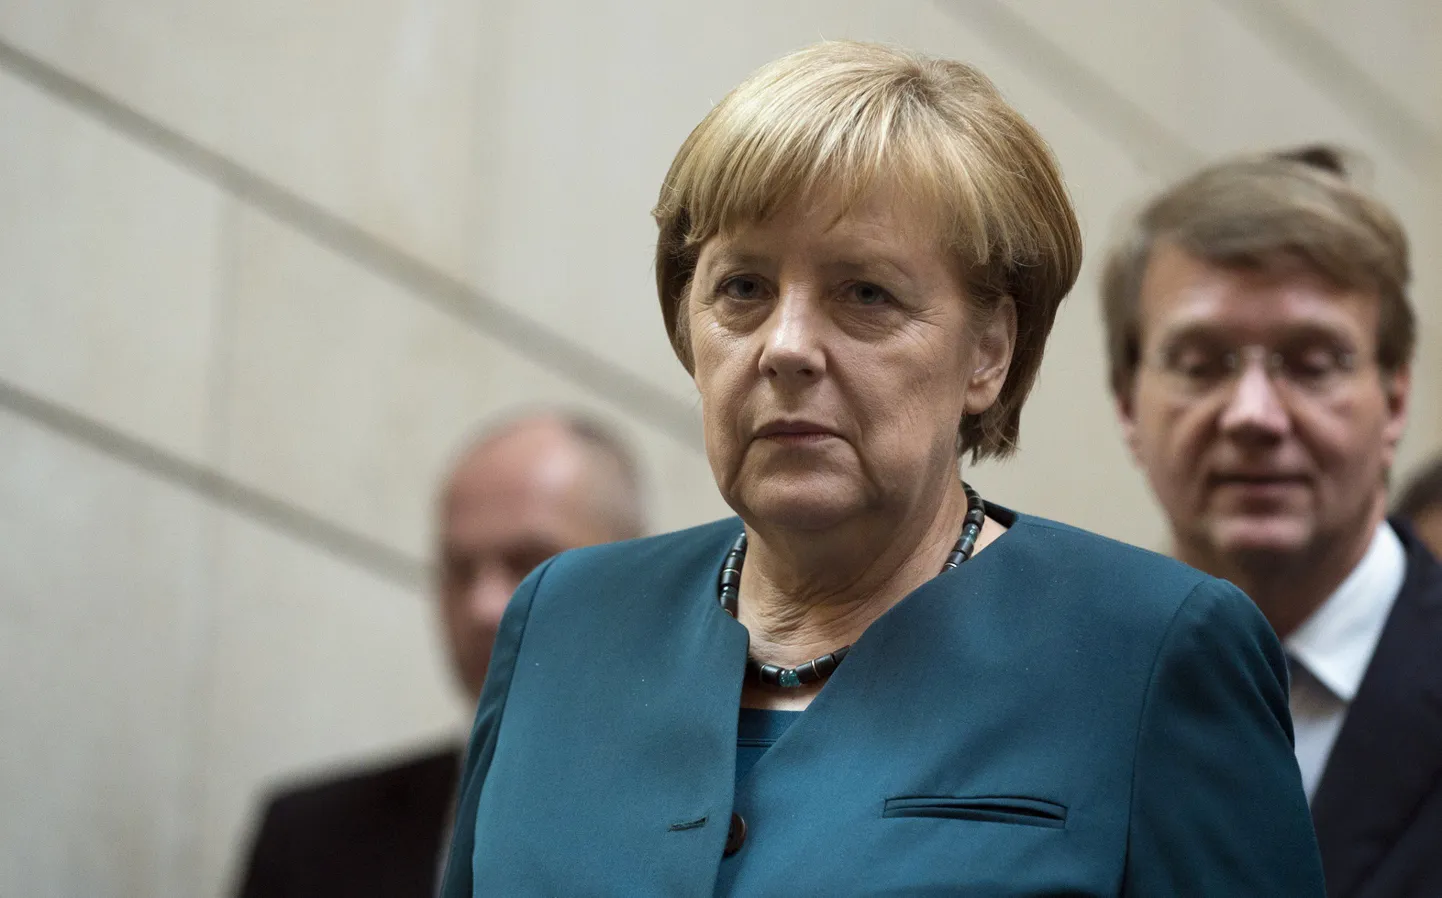 Saksa kantsler Angela Merkel.